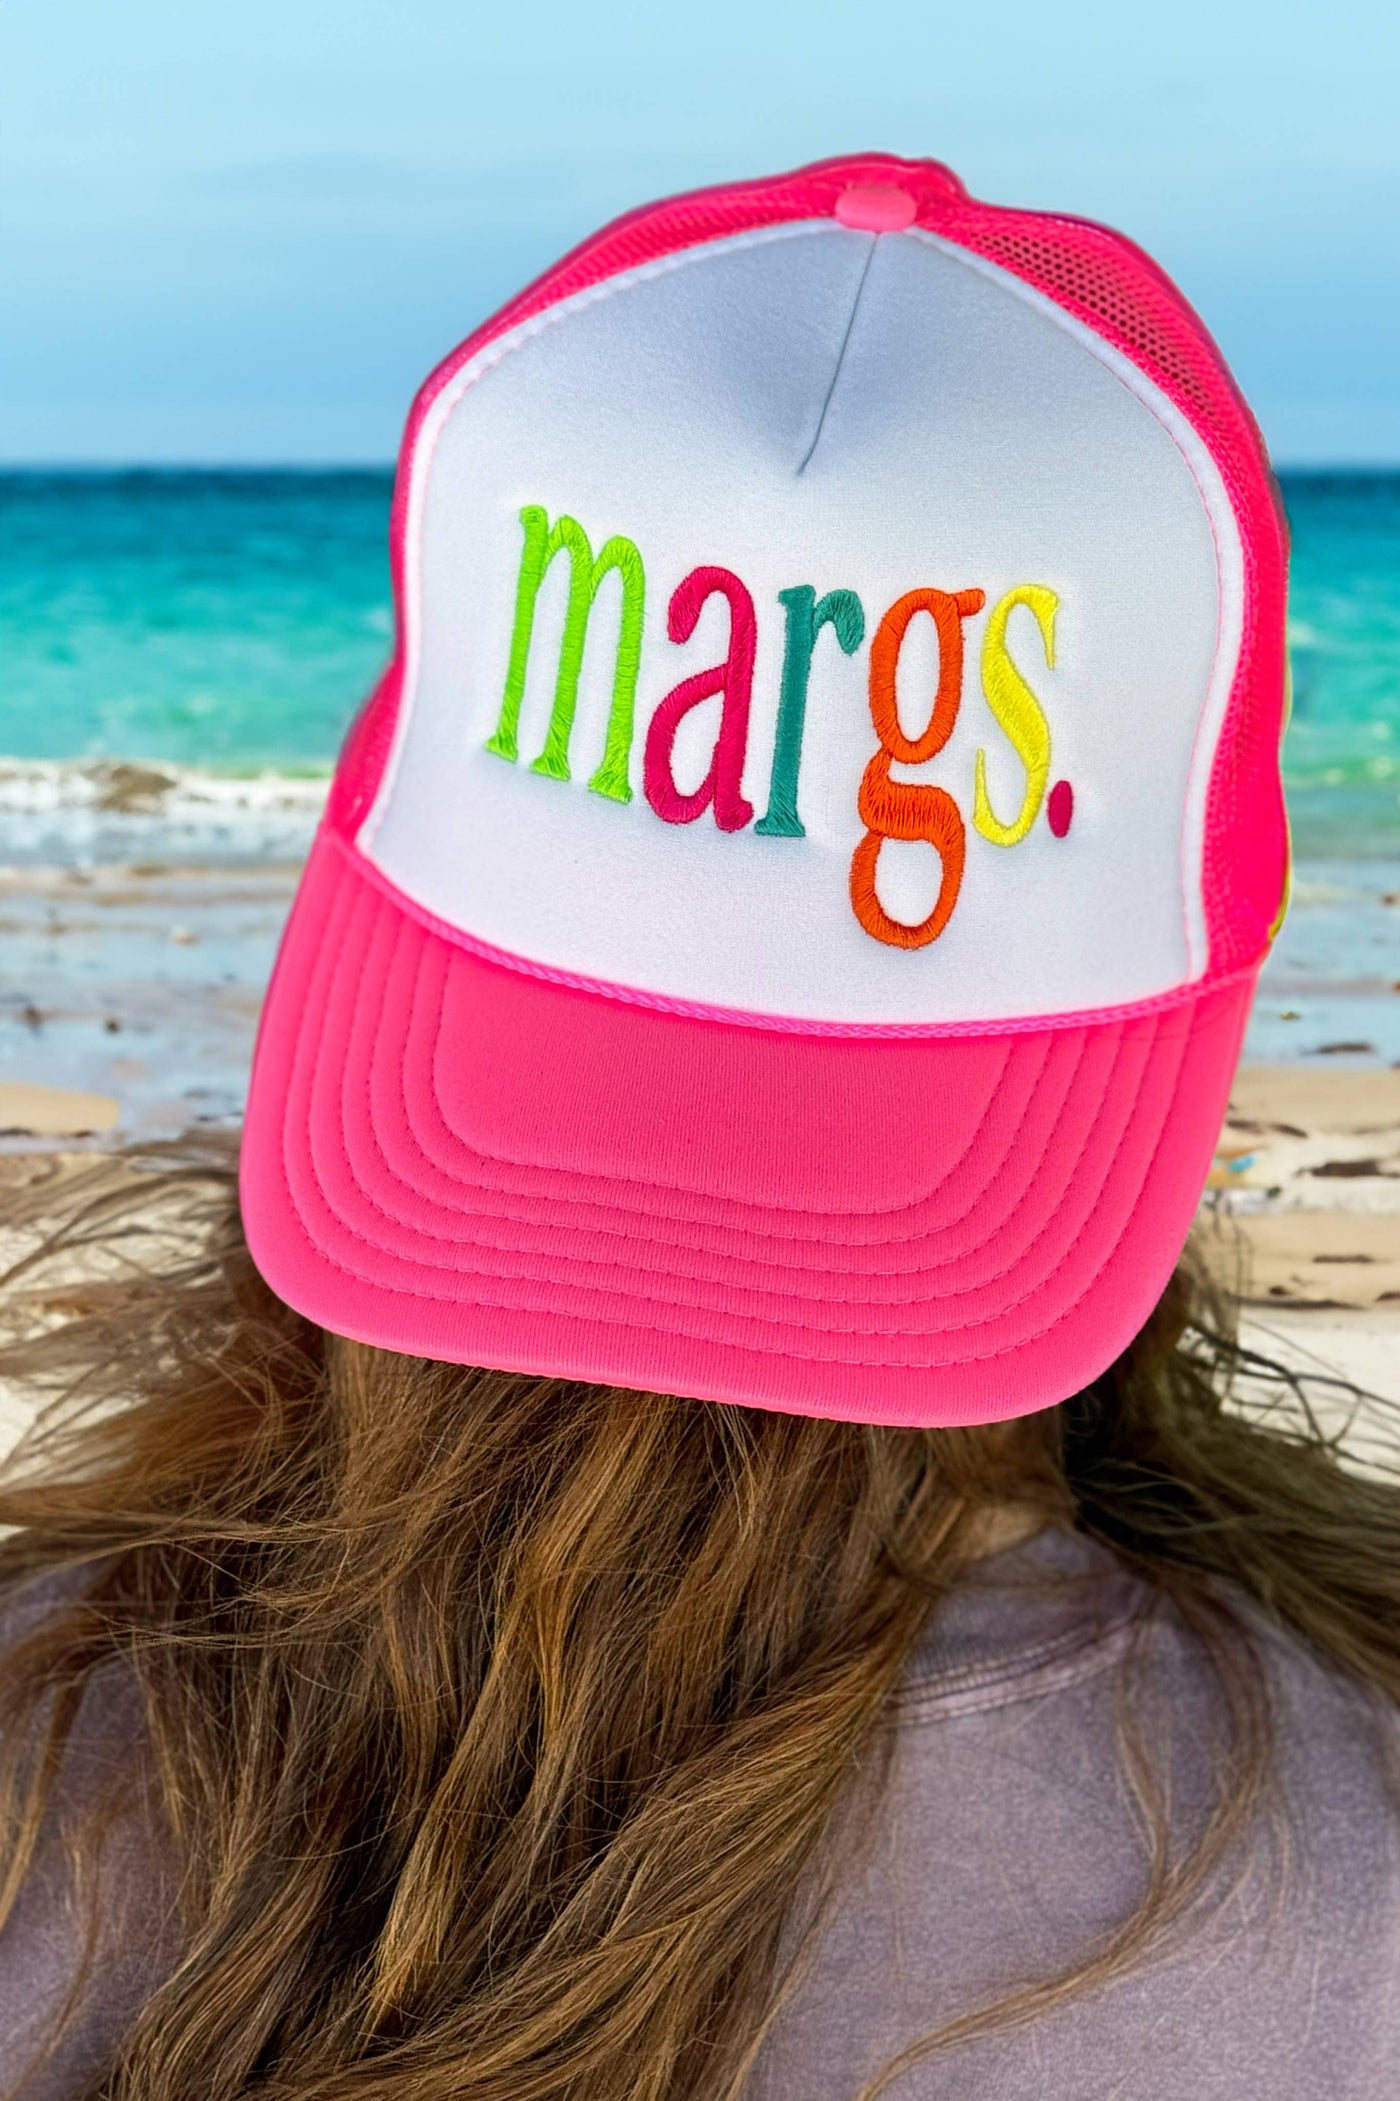 MARGS TRUCKER HAT: White/Neon Pink